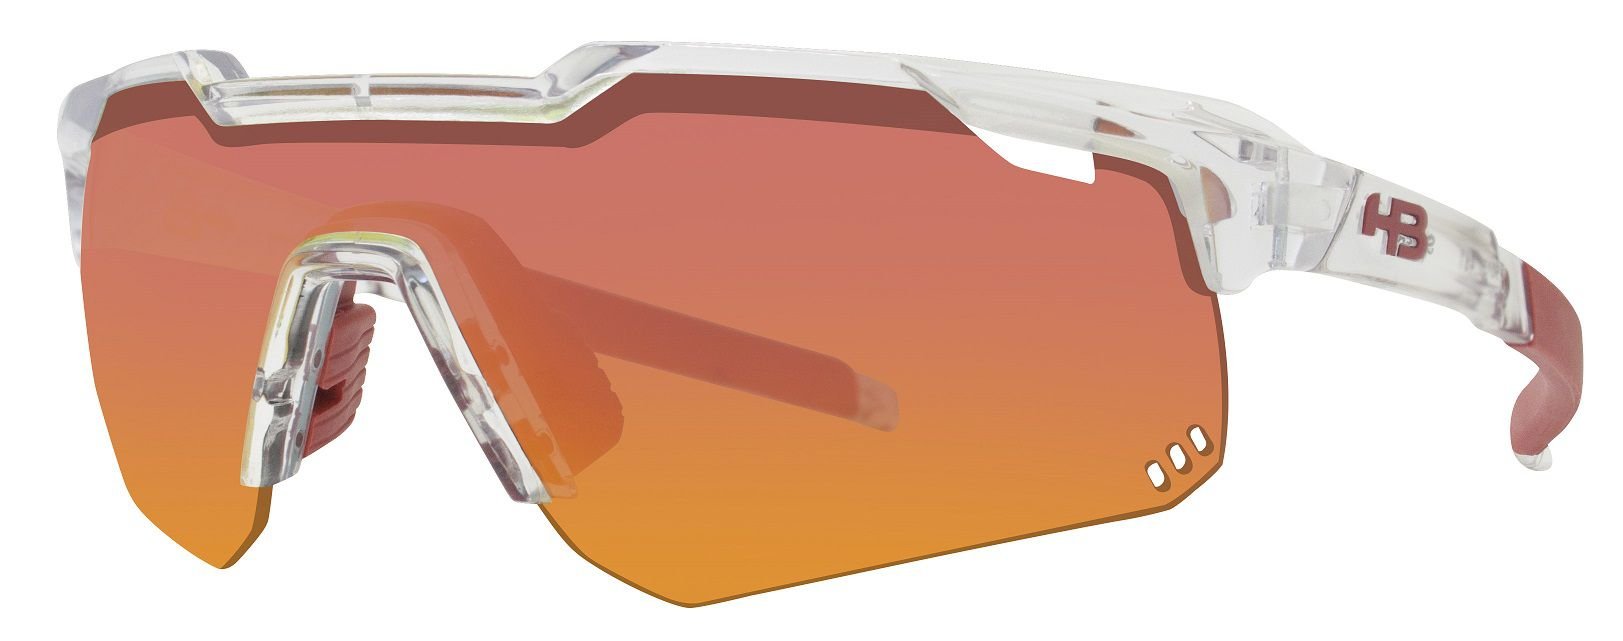 Oculos Solar Hb Shield Mountain Clear Multi Red 10103410087056 Preto 1